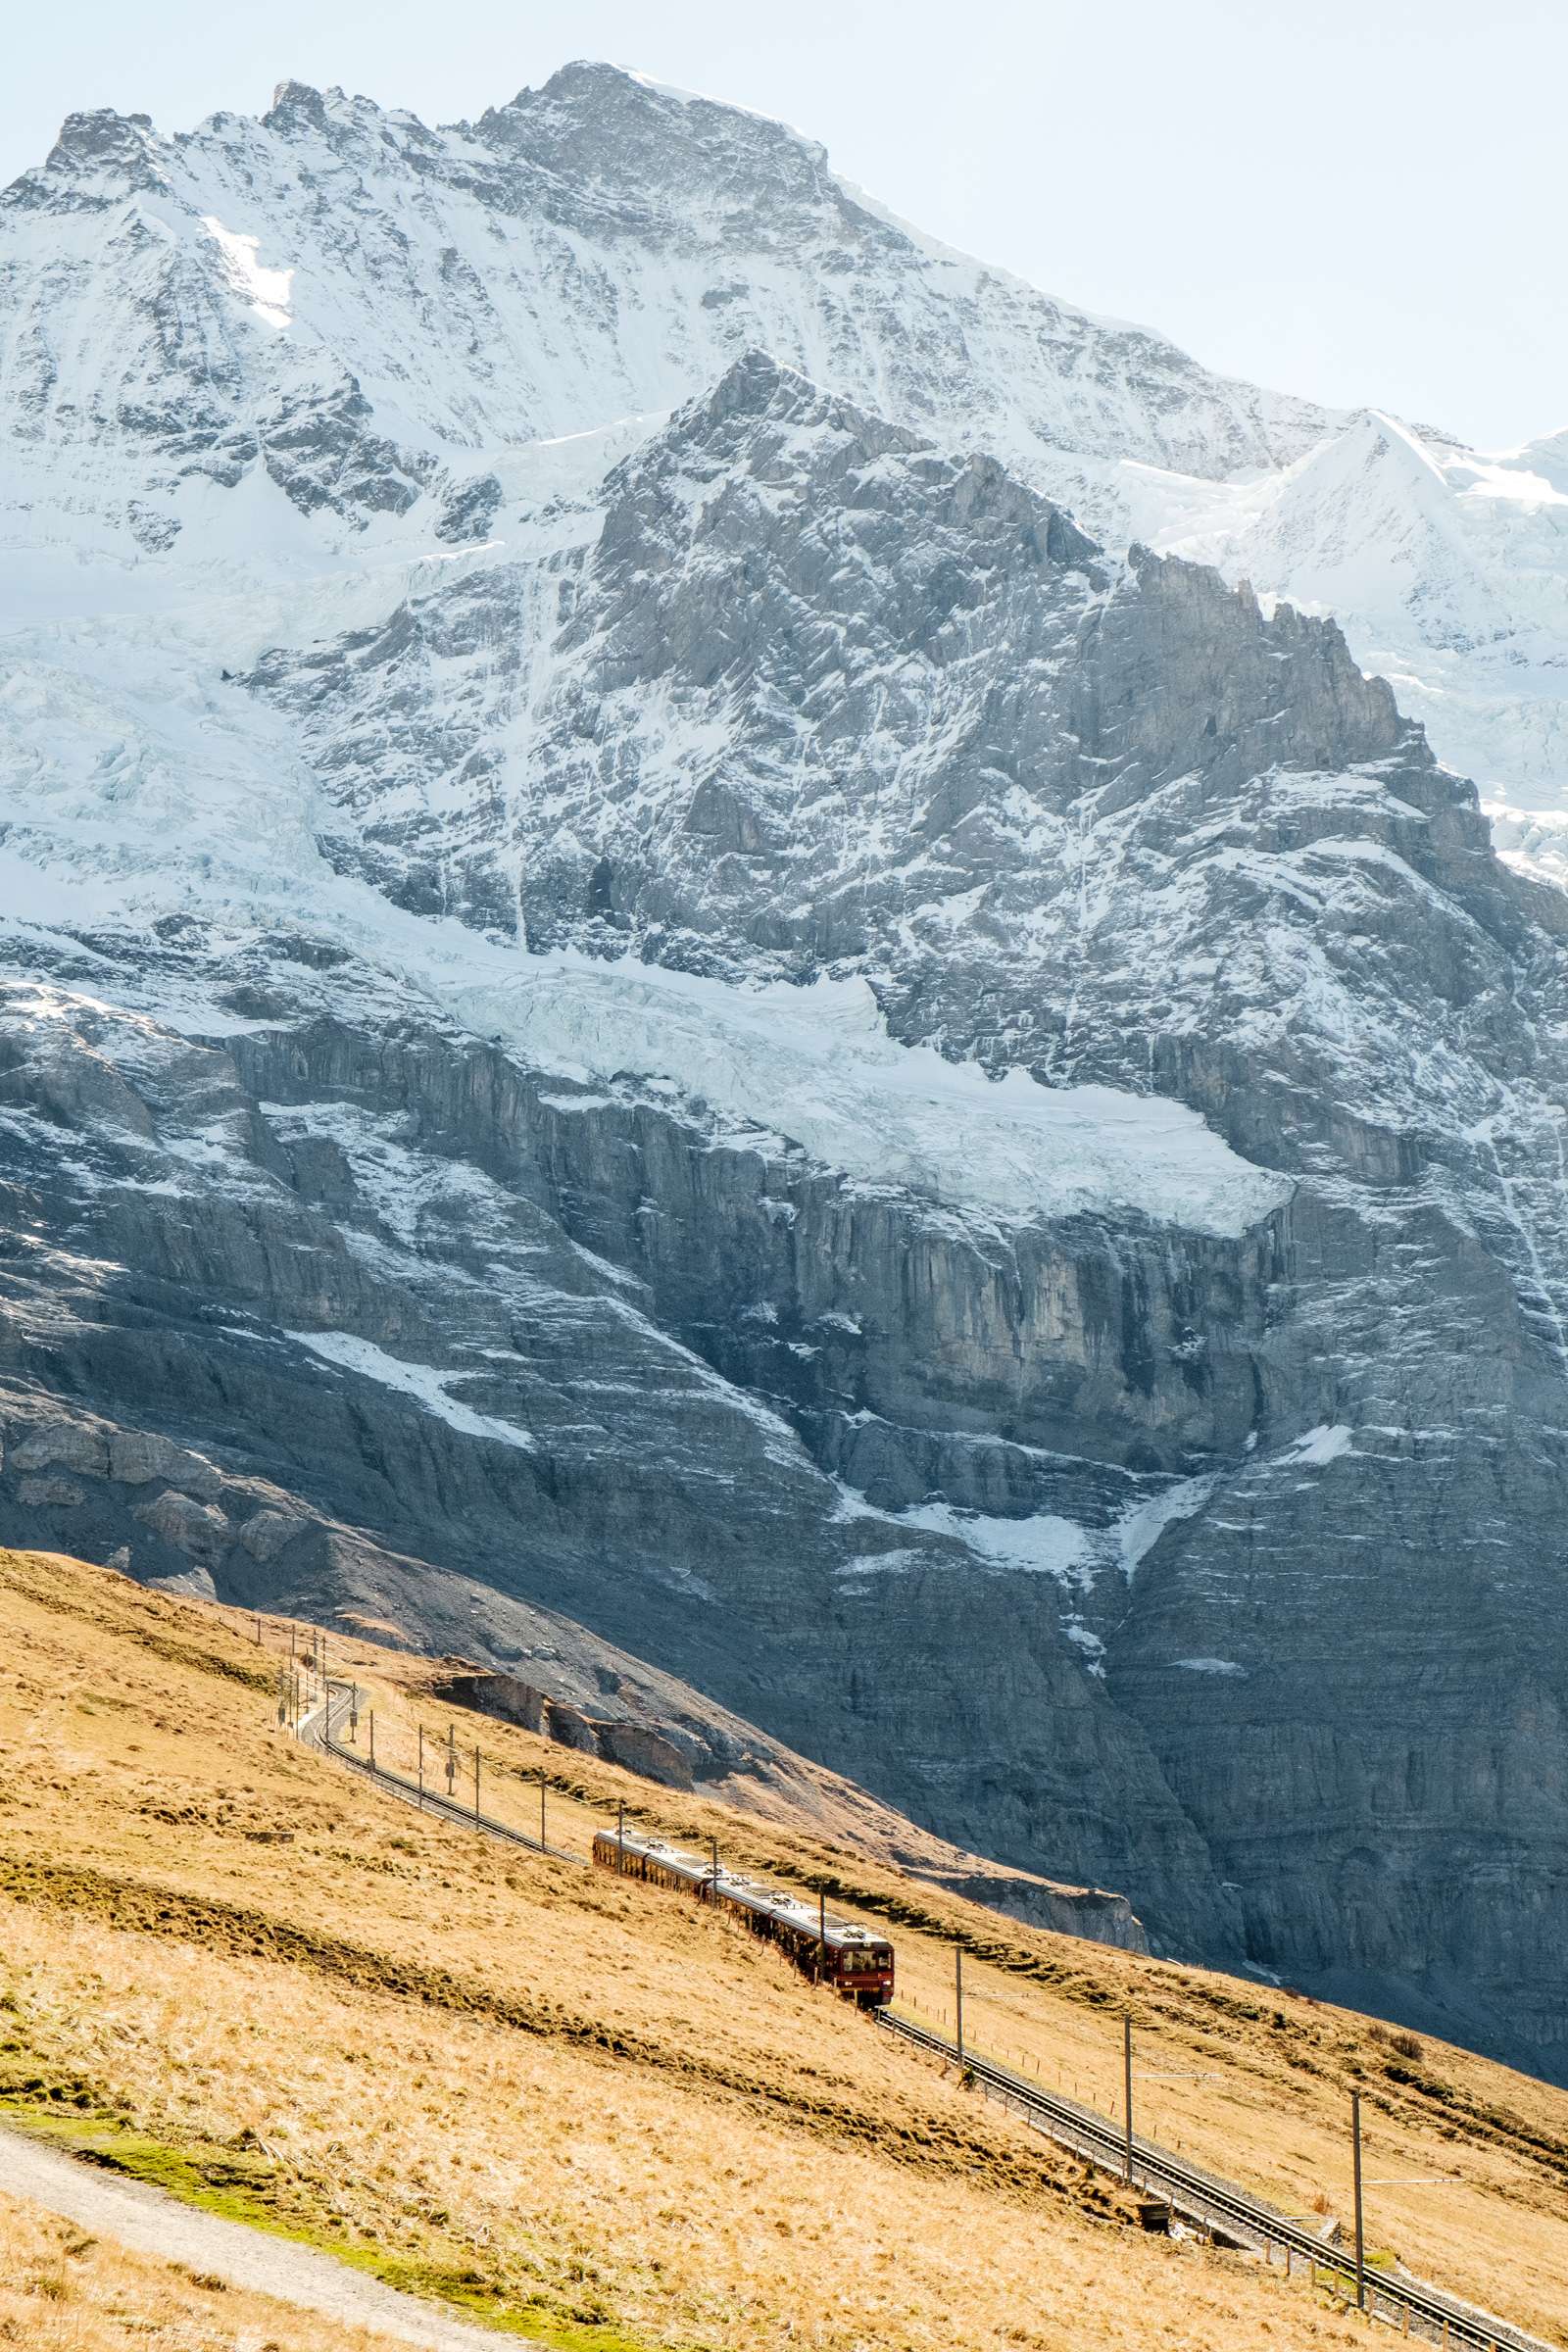 Jungfrau train with huge snowy peak towering over